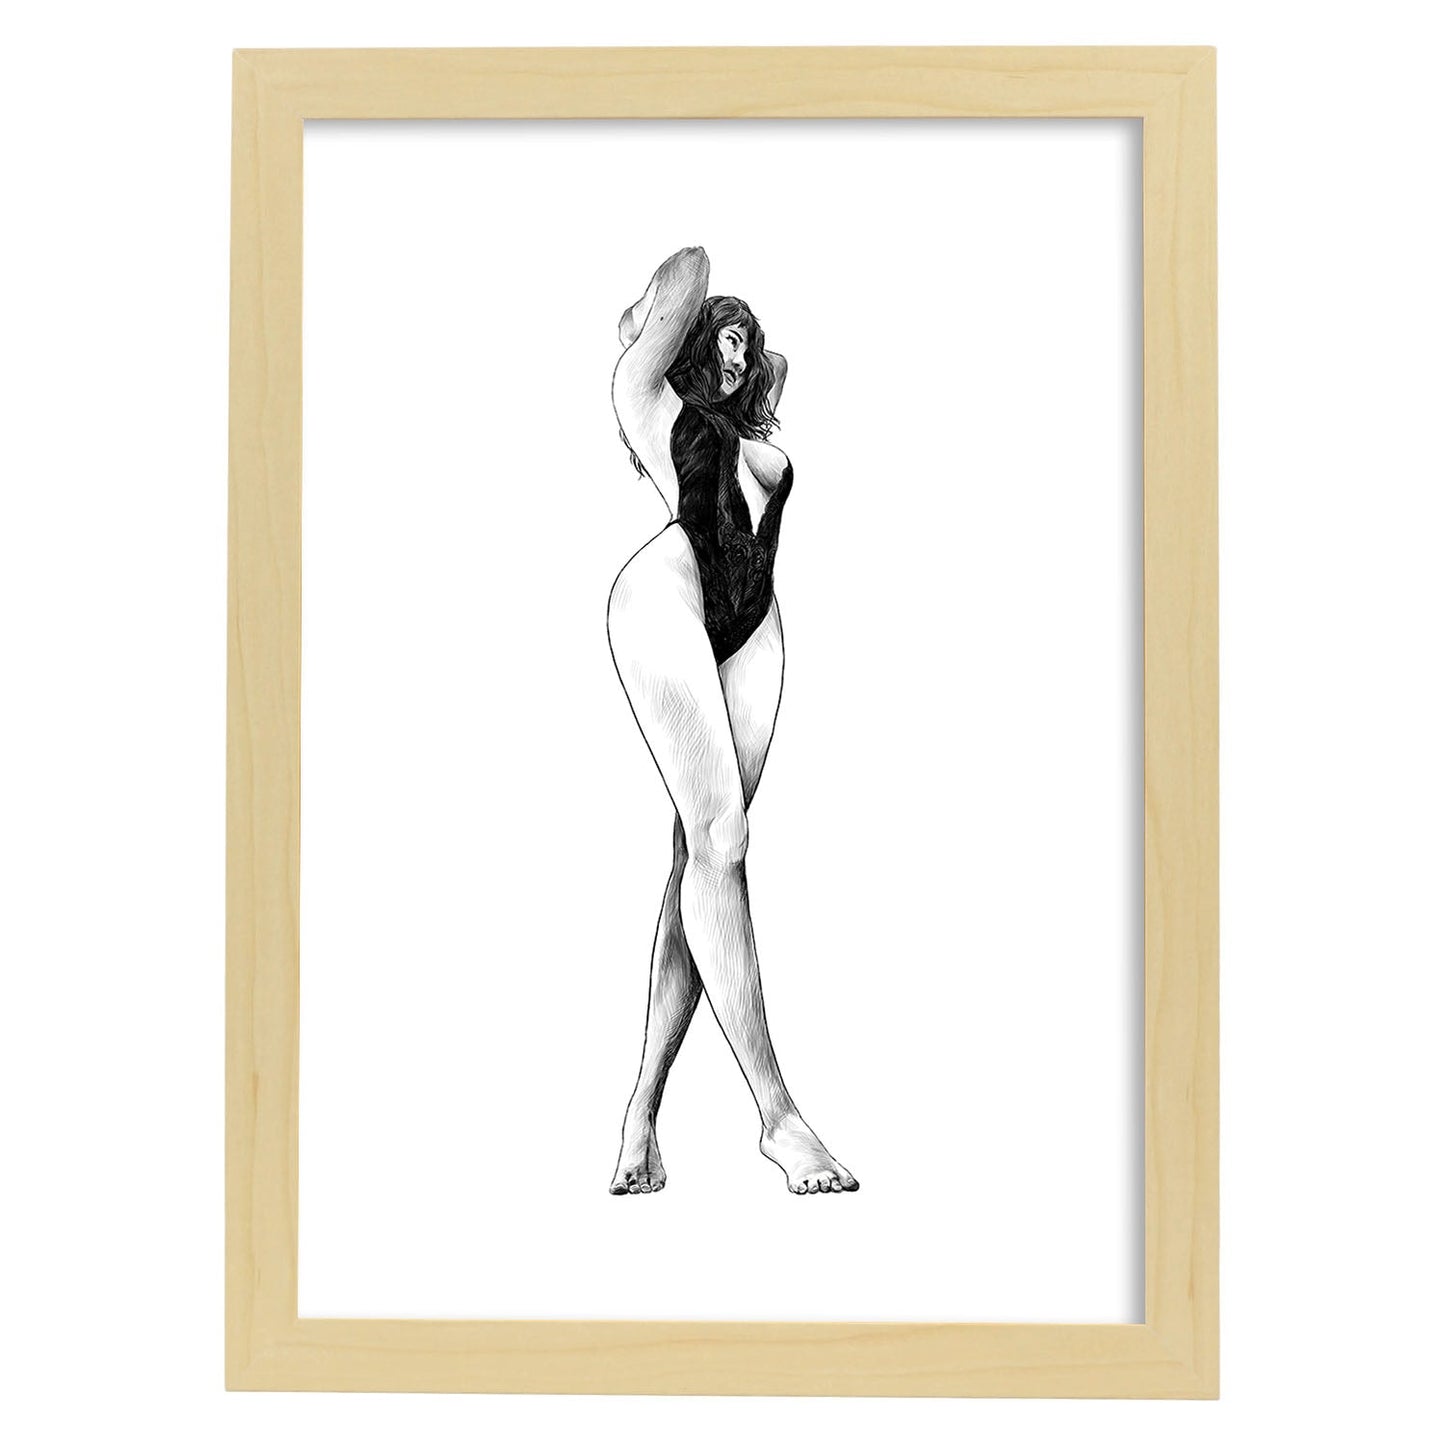 Posters eróticos. Lámina De pie 2 dibujada con imágenes sensuales del cuerpo femenino.-Artwork-Nacnic-A4-Marco Madera clara-Nacnic Estudio SL